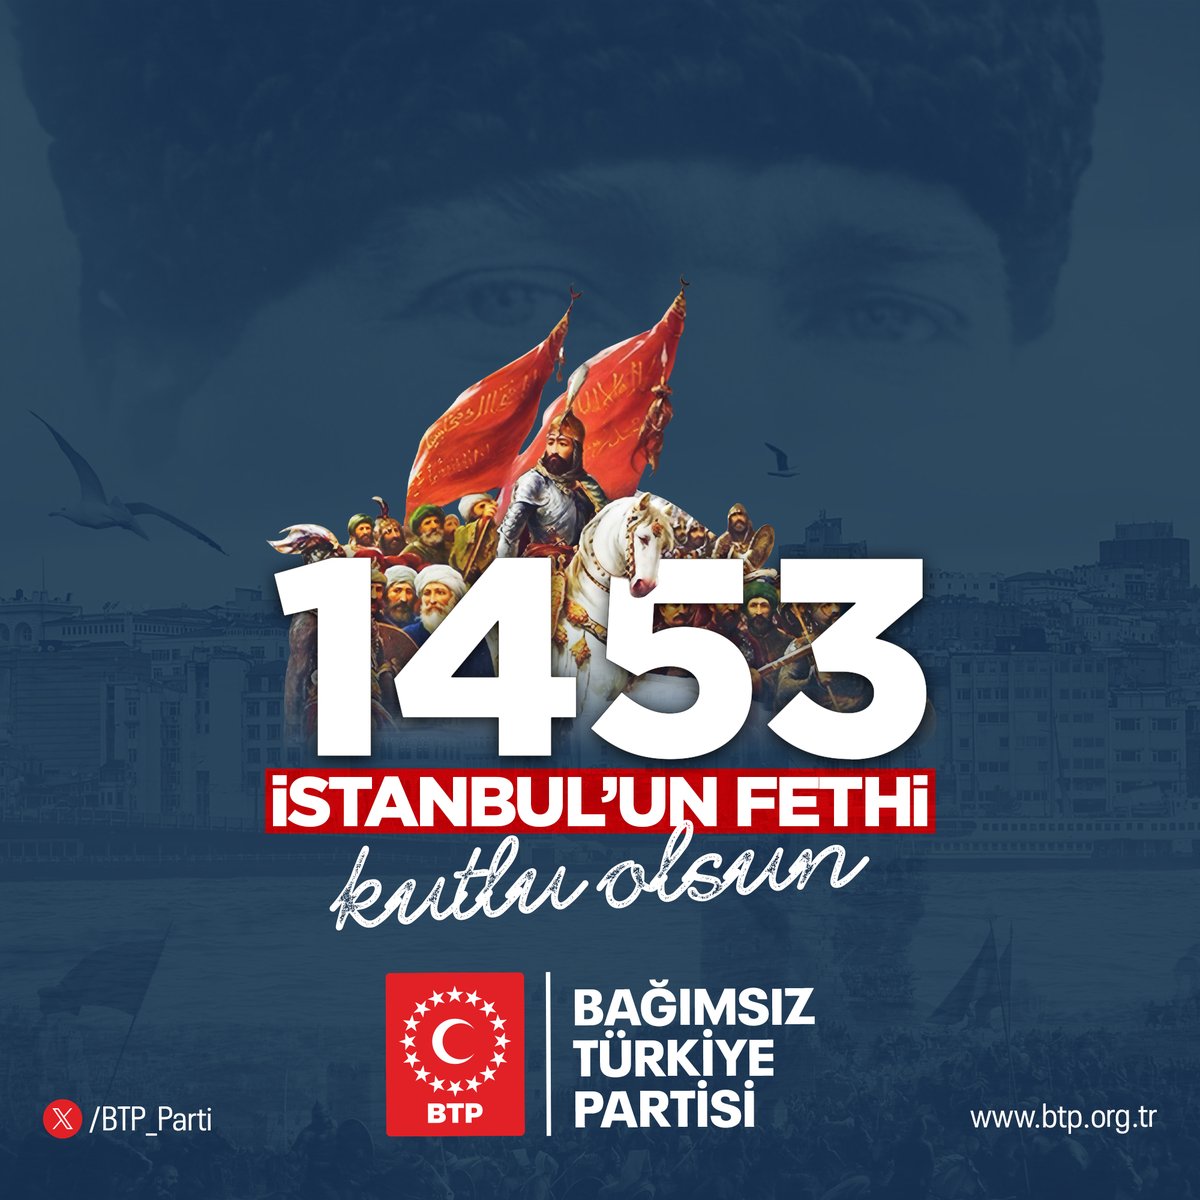 İstanbul’un Fethinin 571. yıl dönümü kutlu olsun. Bu vesileyle İstanbul'u fetheden şanlı geçmişimizi ve İstanbul'u haçlı işgalinden kurtaran Gazi Mustafa Kemal Atatürk'ü rahmetle anıyoruz.🇹🇷 #İstanbulunFethi #29Mayıs1453